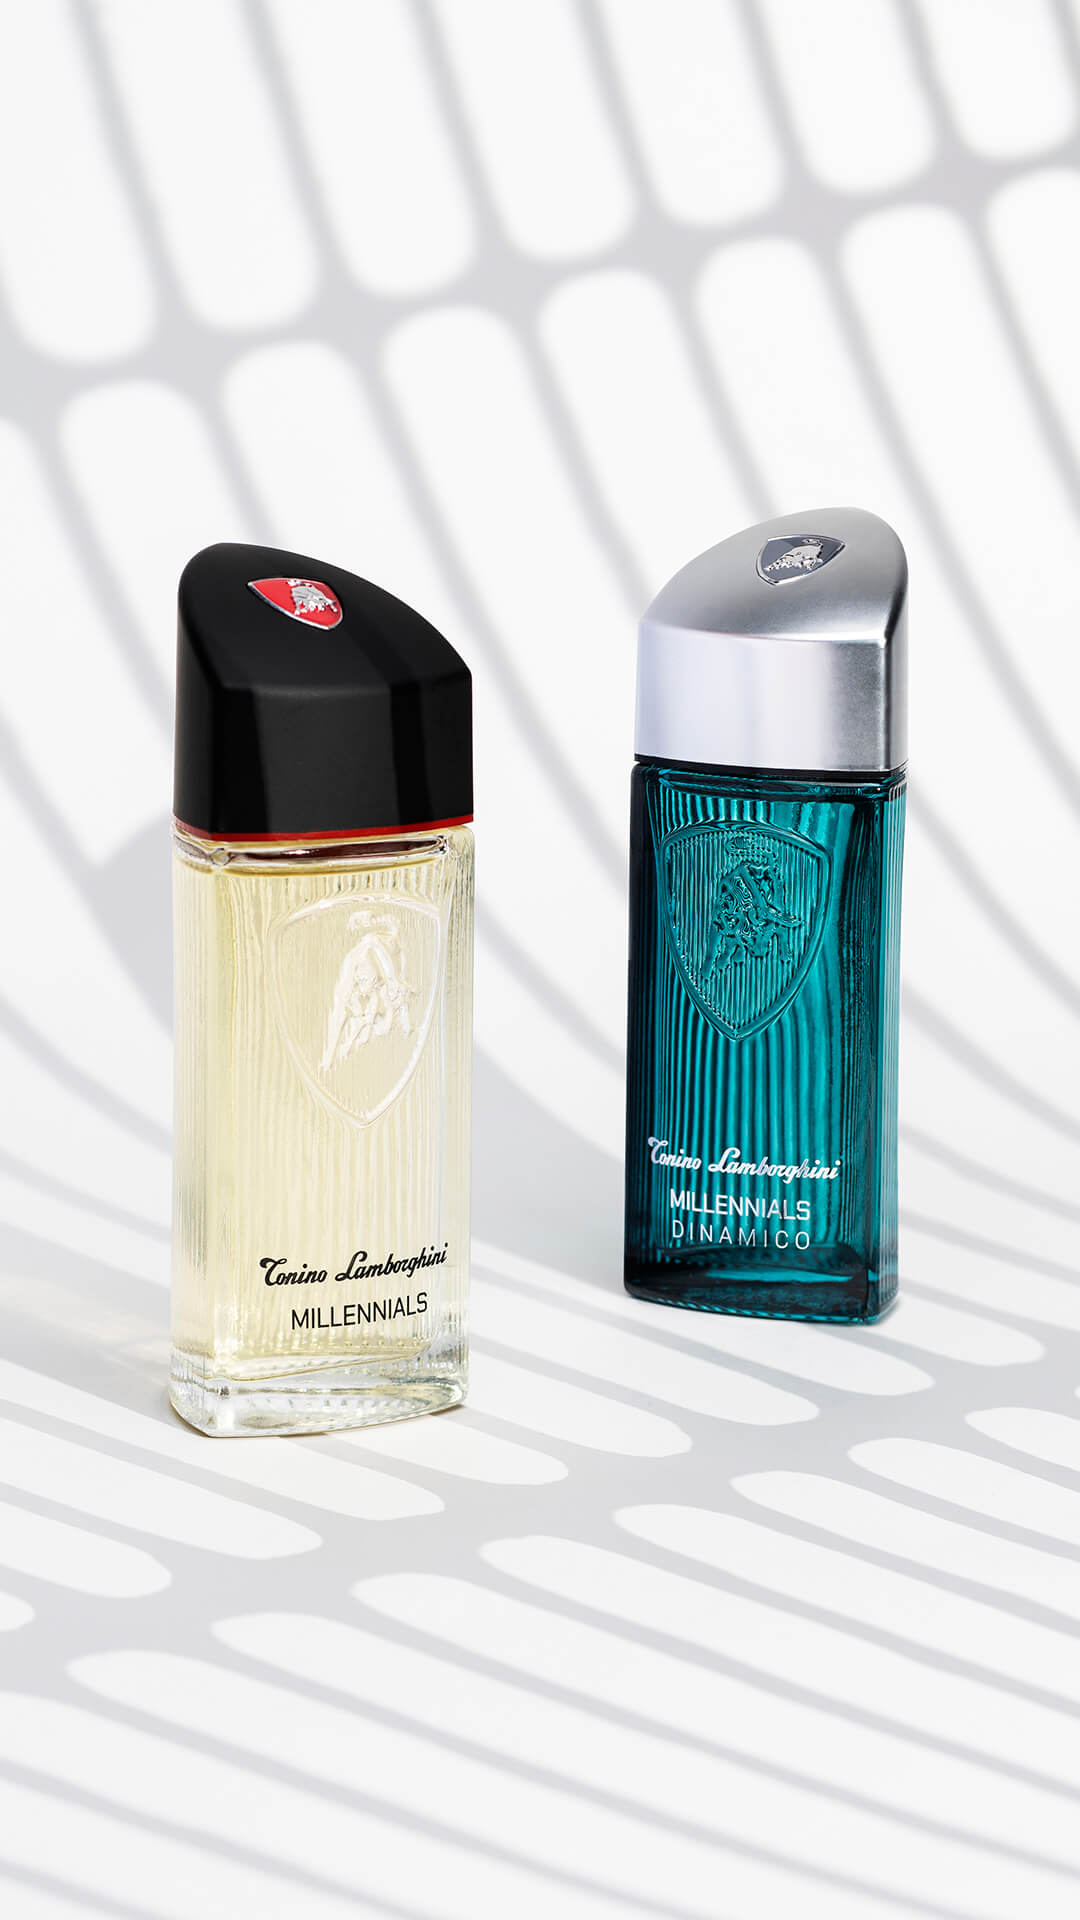 tonino-lamborghini-fragranza-millennials-collection-desire-fragrances-1